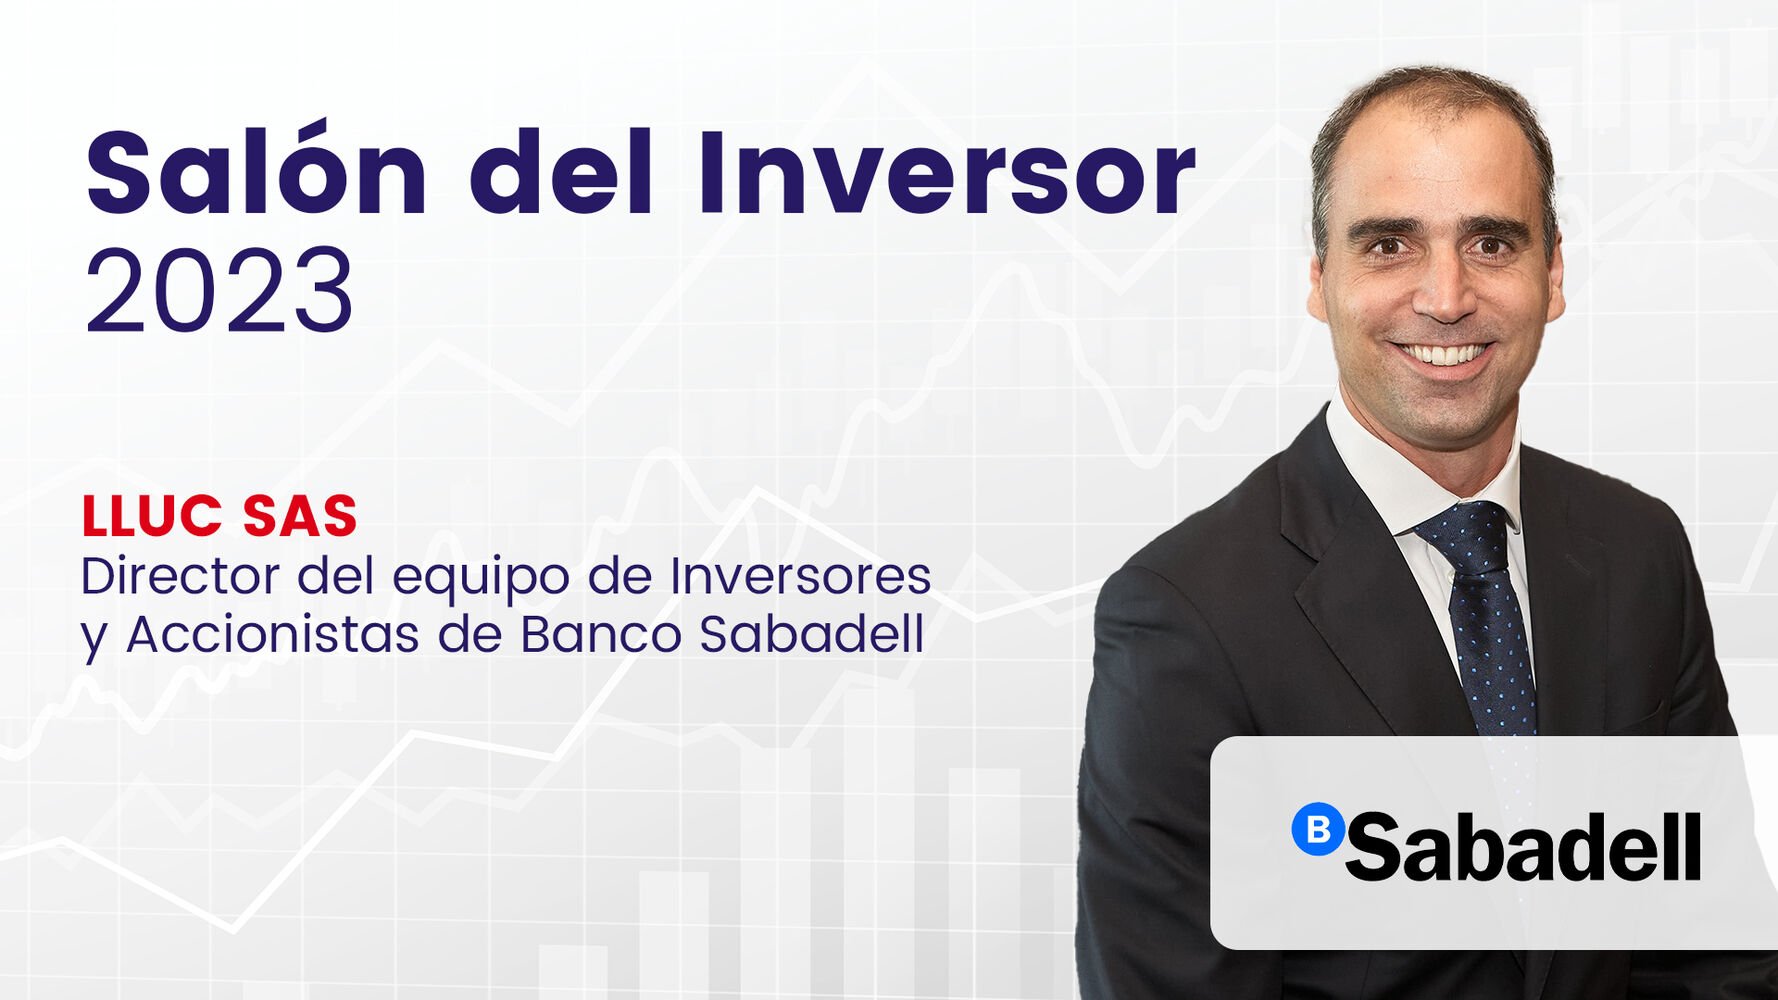 Banco Sabadell apunta a un futuro sólido: Objetivo, capturar el mejor escenario bancario previsto